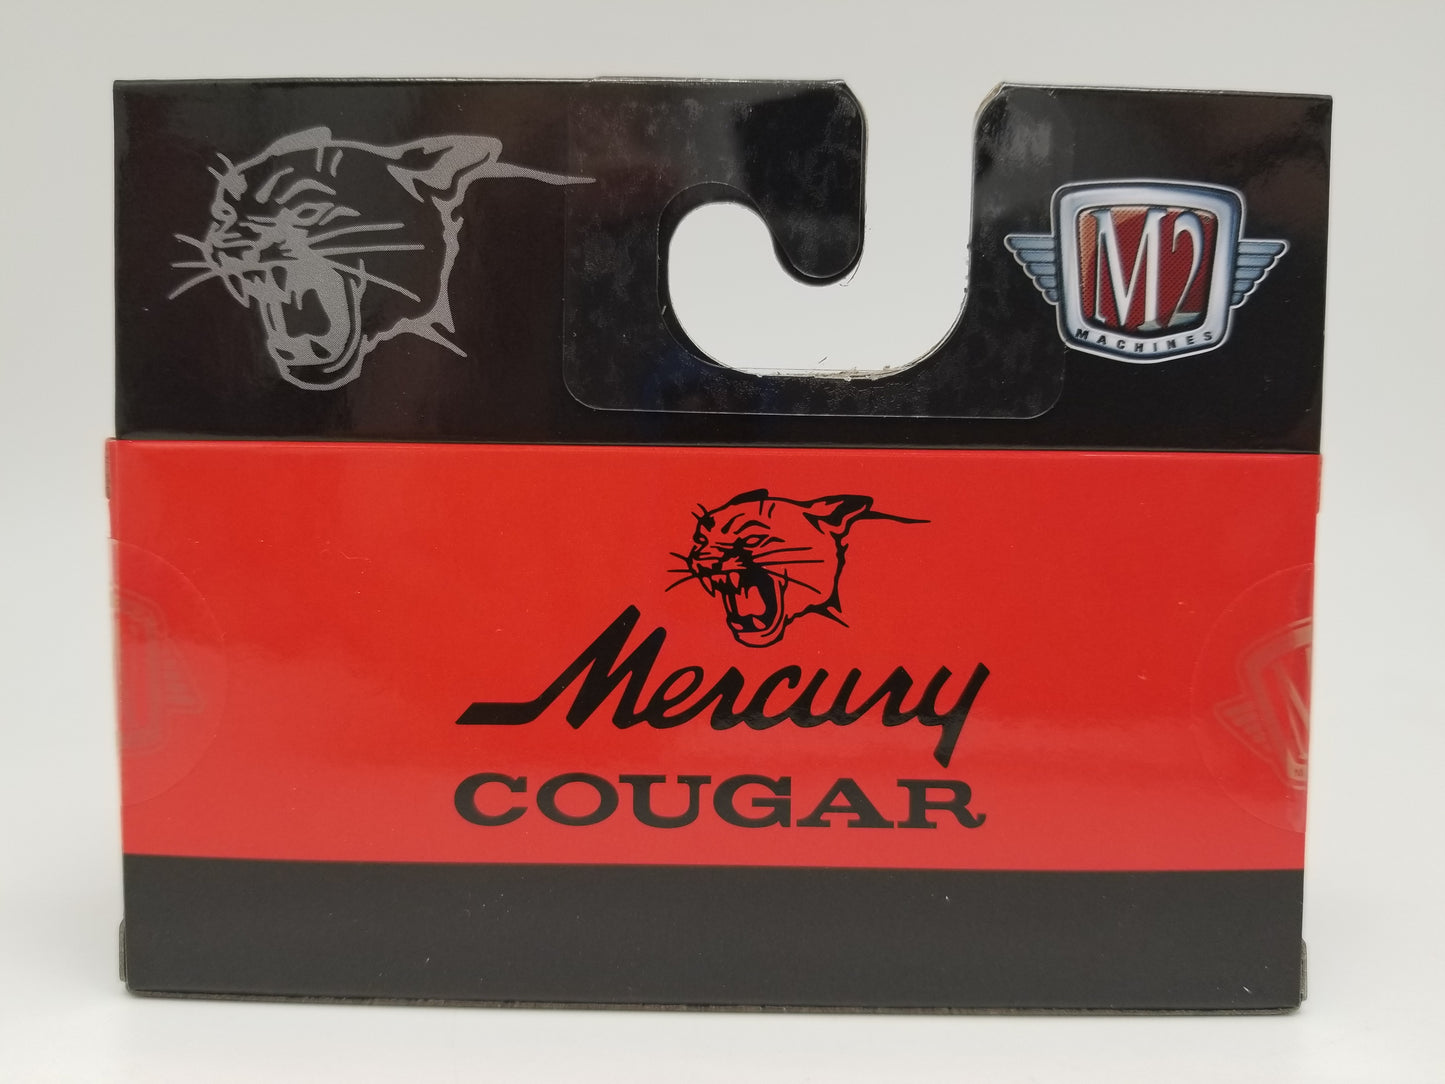 M2 1968 Mercury Cougar 390